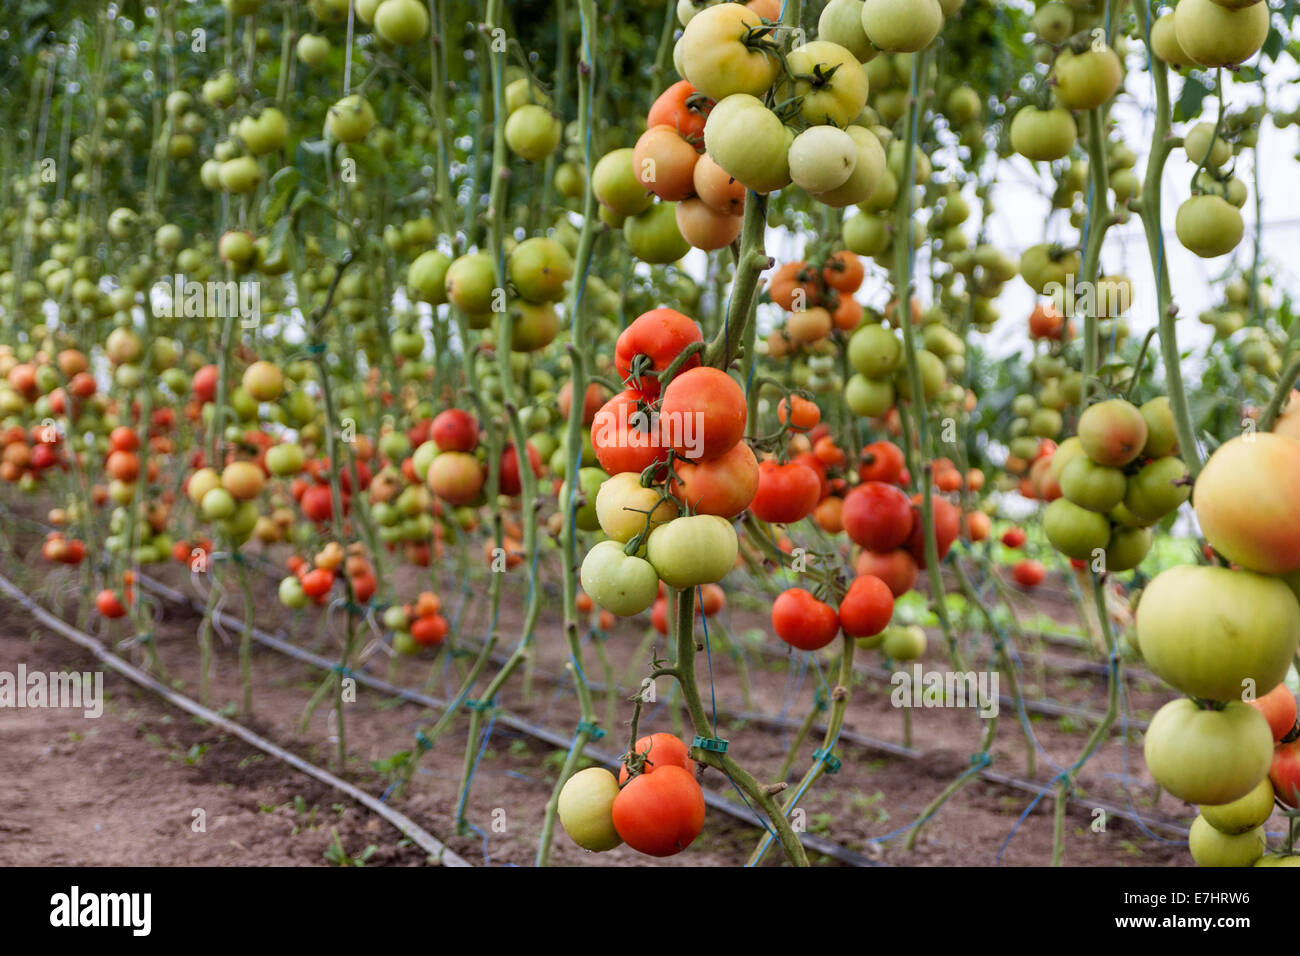 Un montón de tomates rojos y verdes en un invernadero Foto de stock